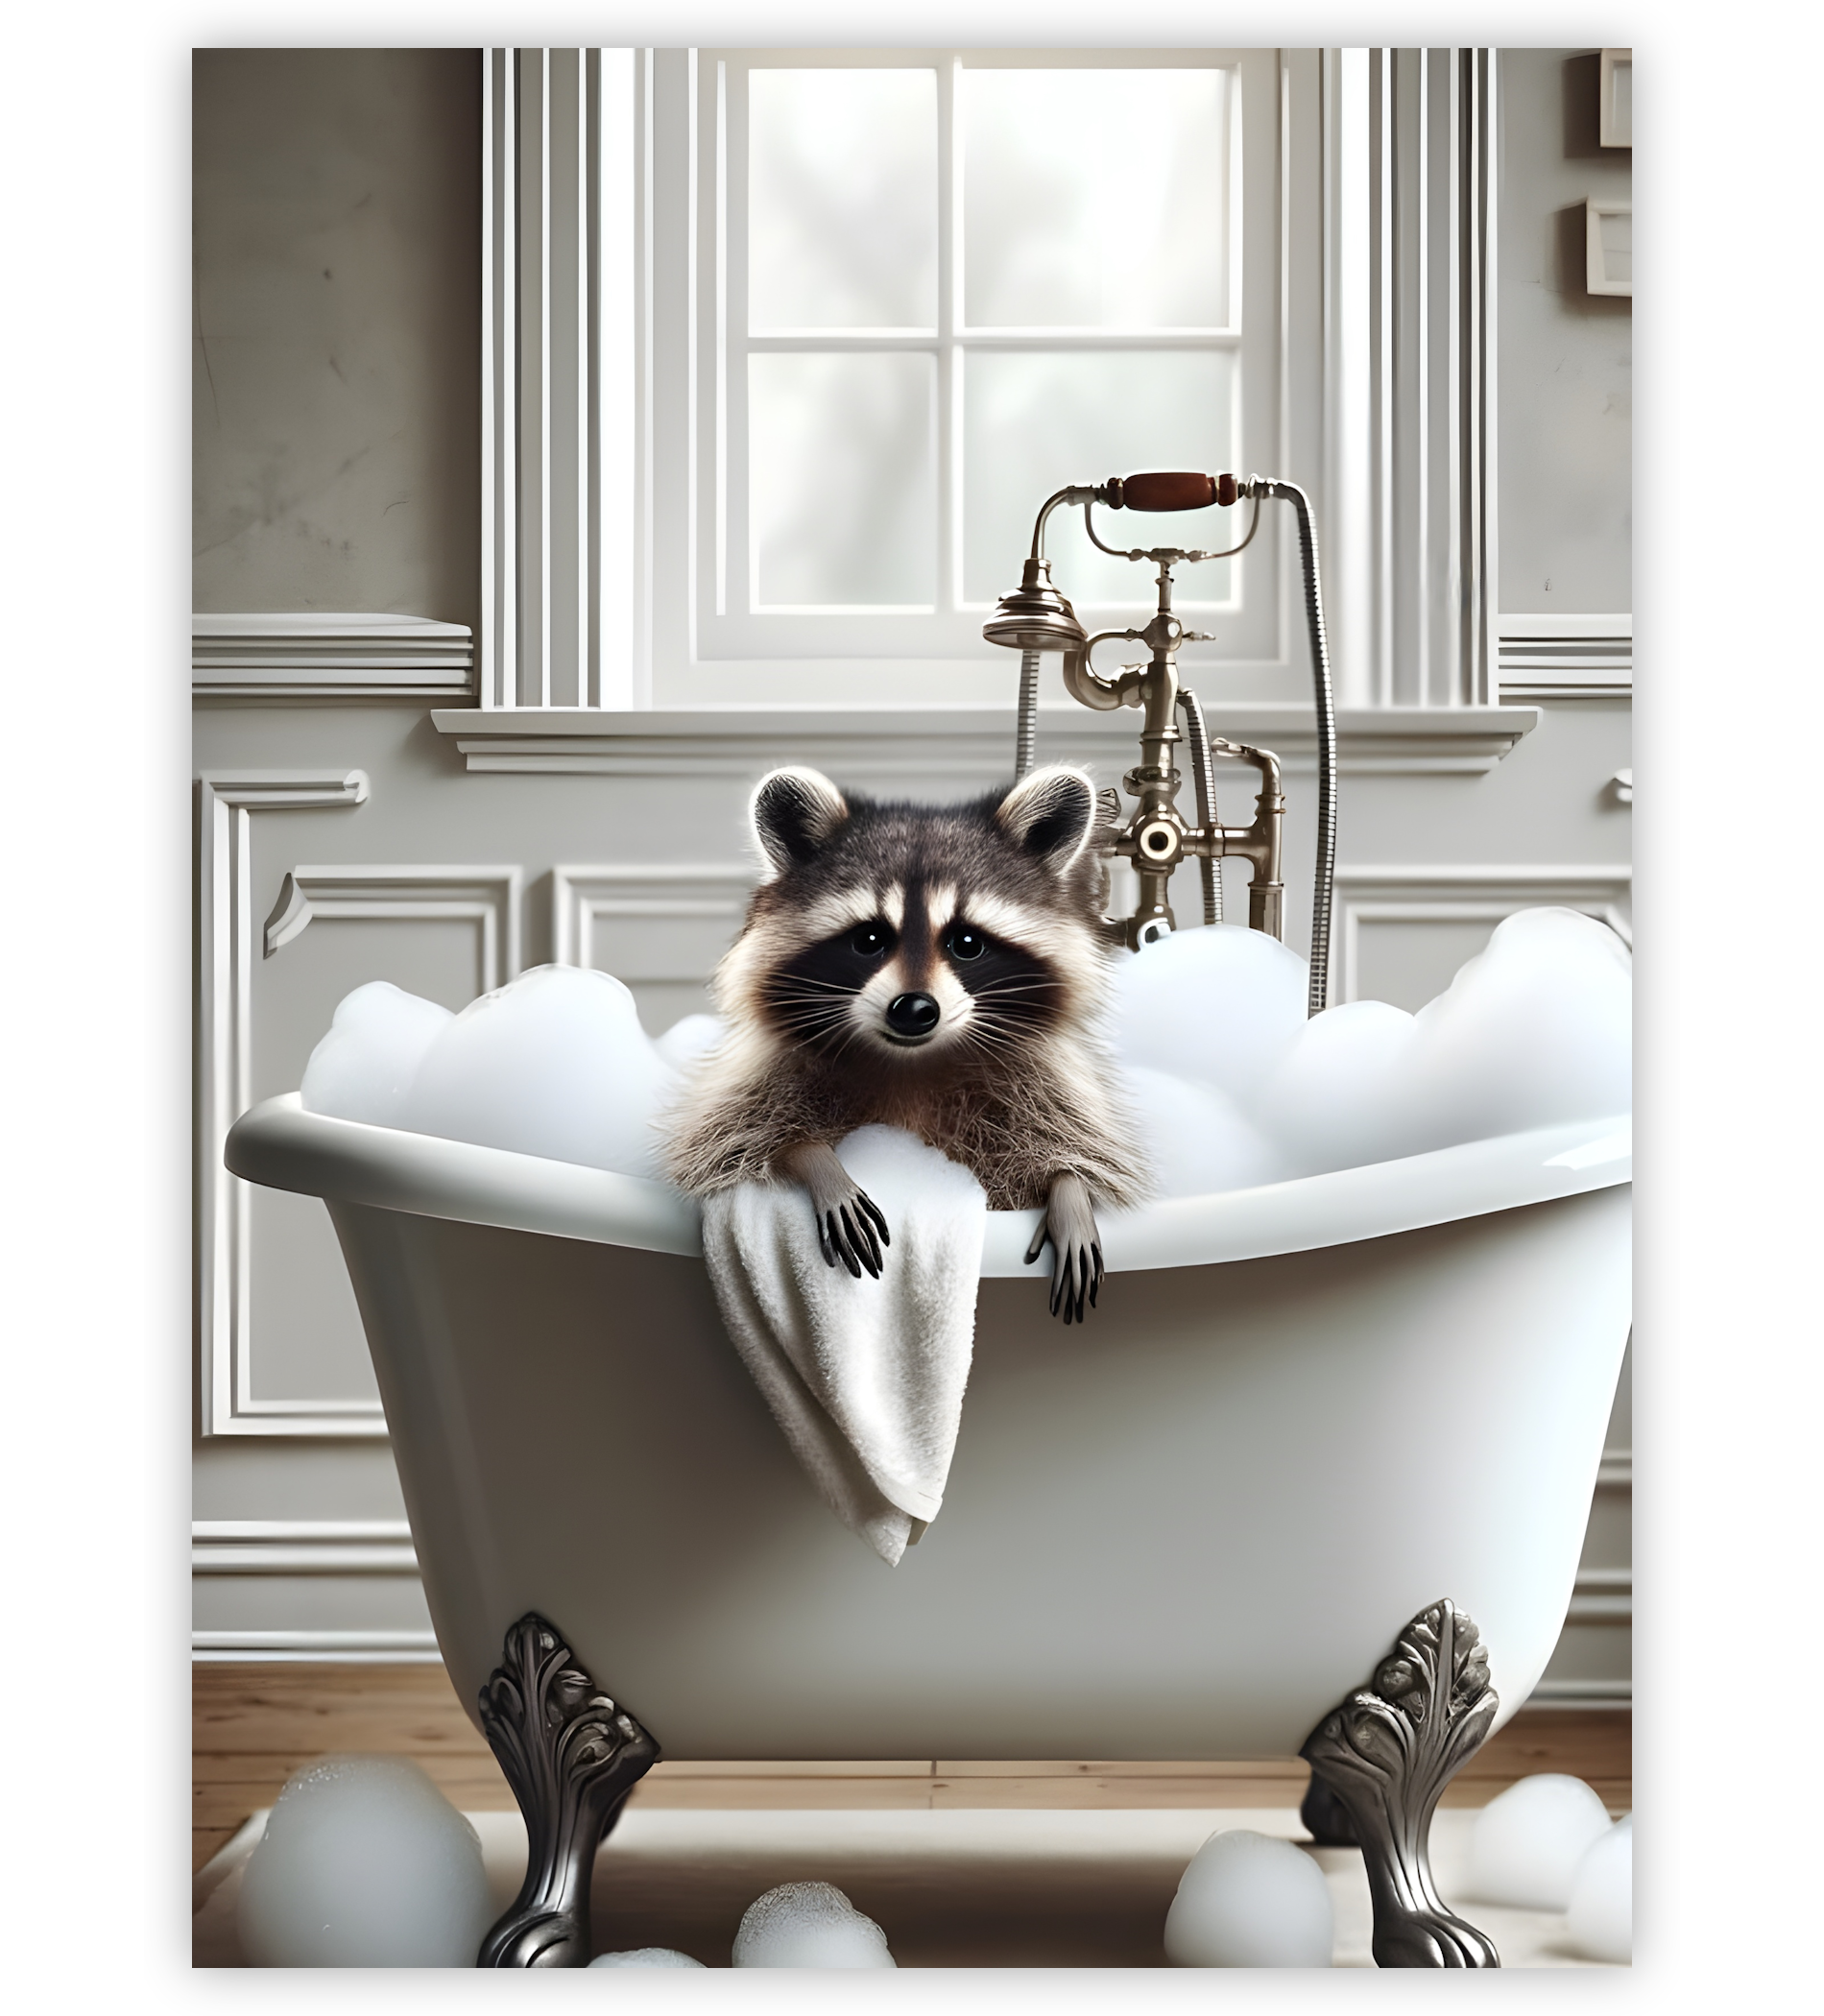 Poster, Wandbild von Waschbär in Badewanne